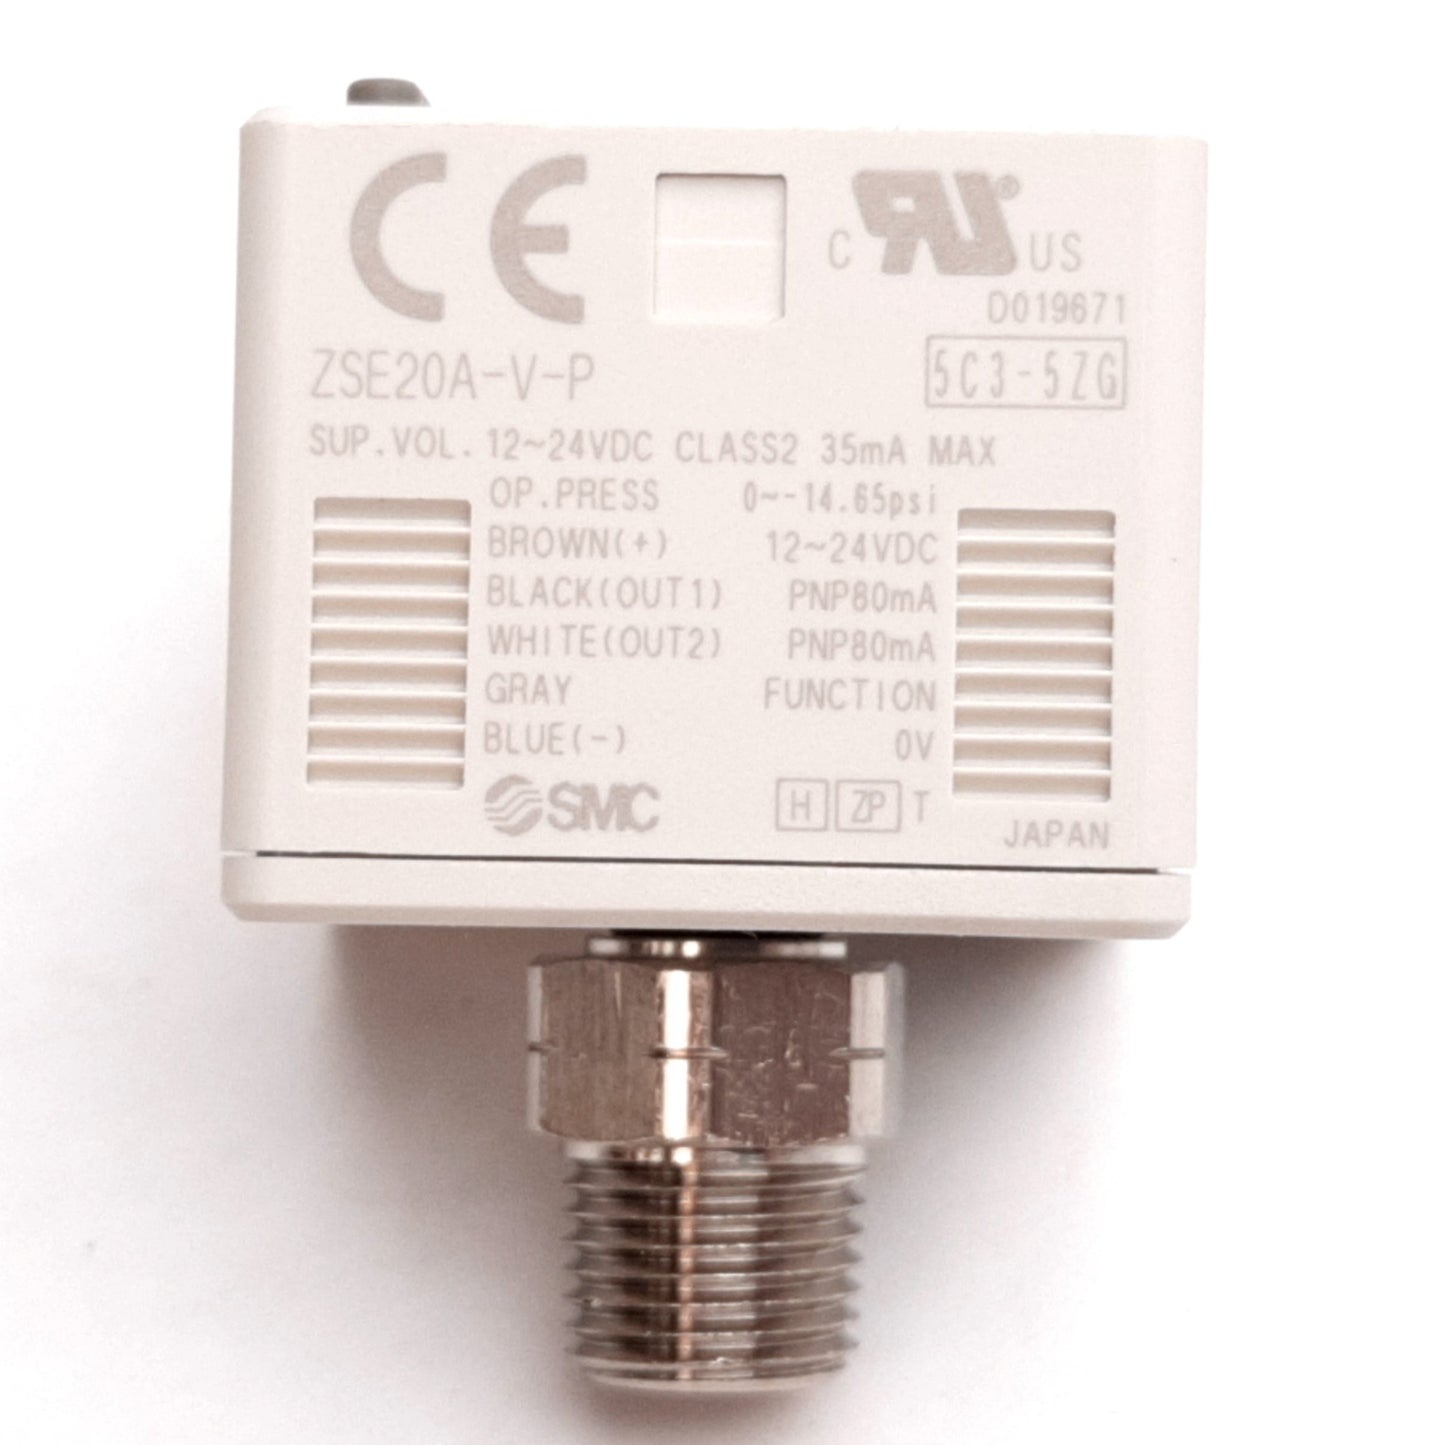 New SMC ZSE20A-V-P-N01-JA1K Vacuum Digital Pressure Switch, 0 to -14.65psi, 1/8" NPT